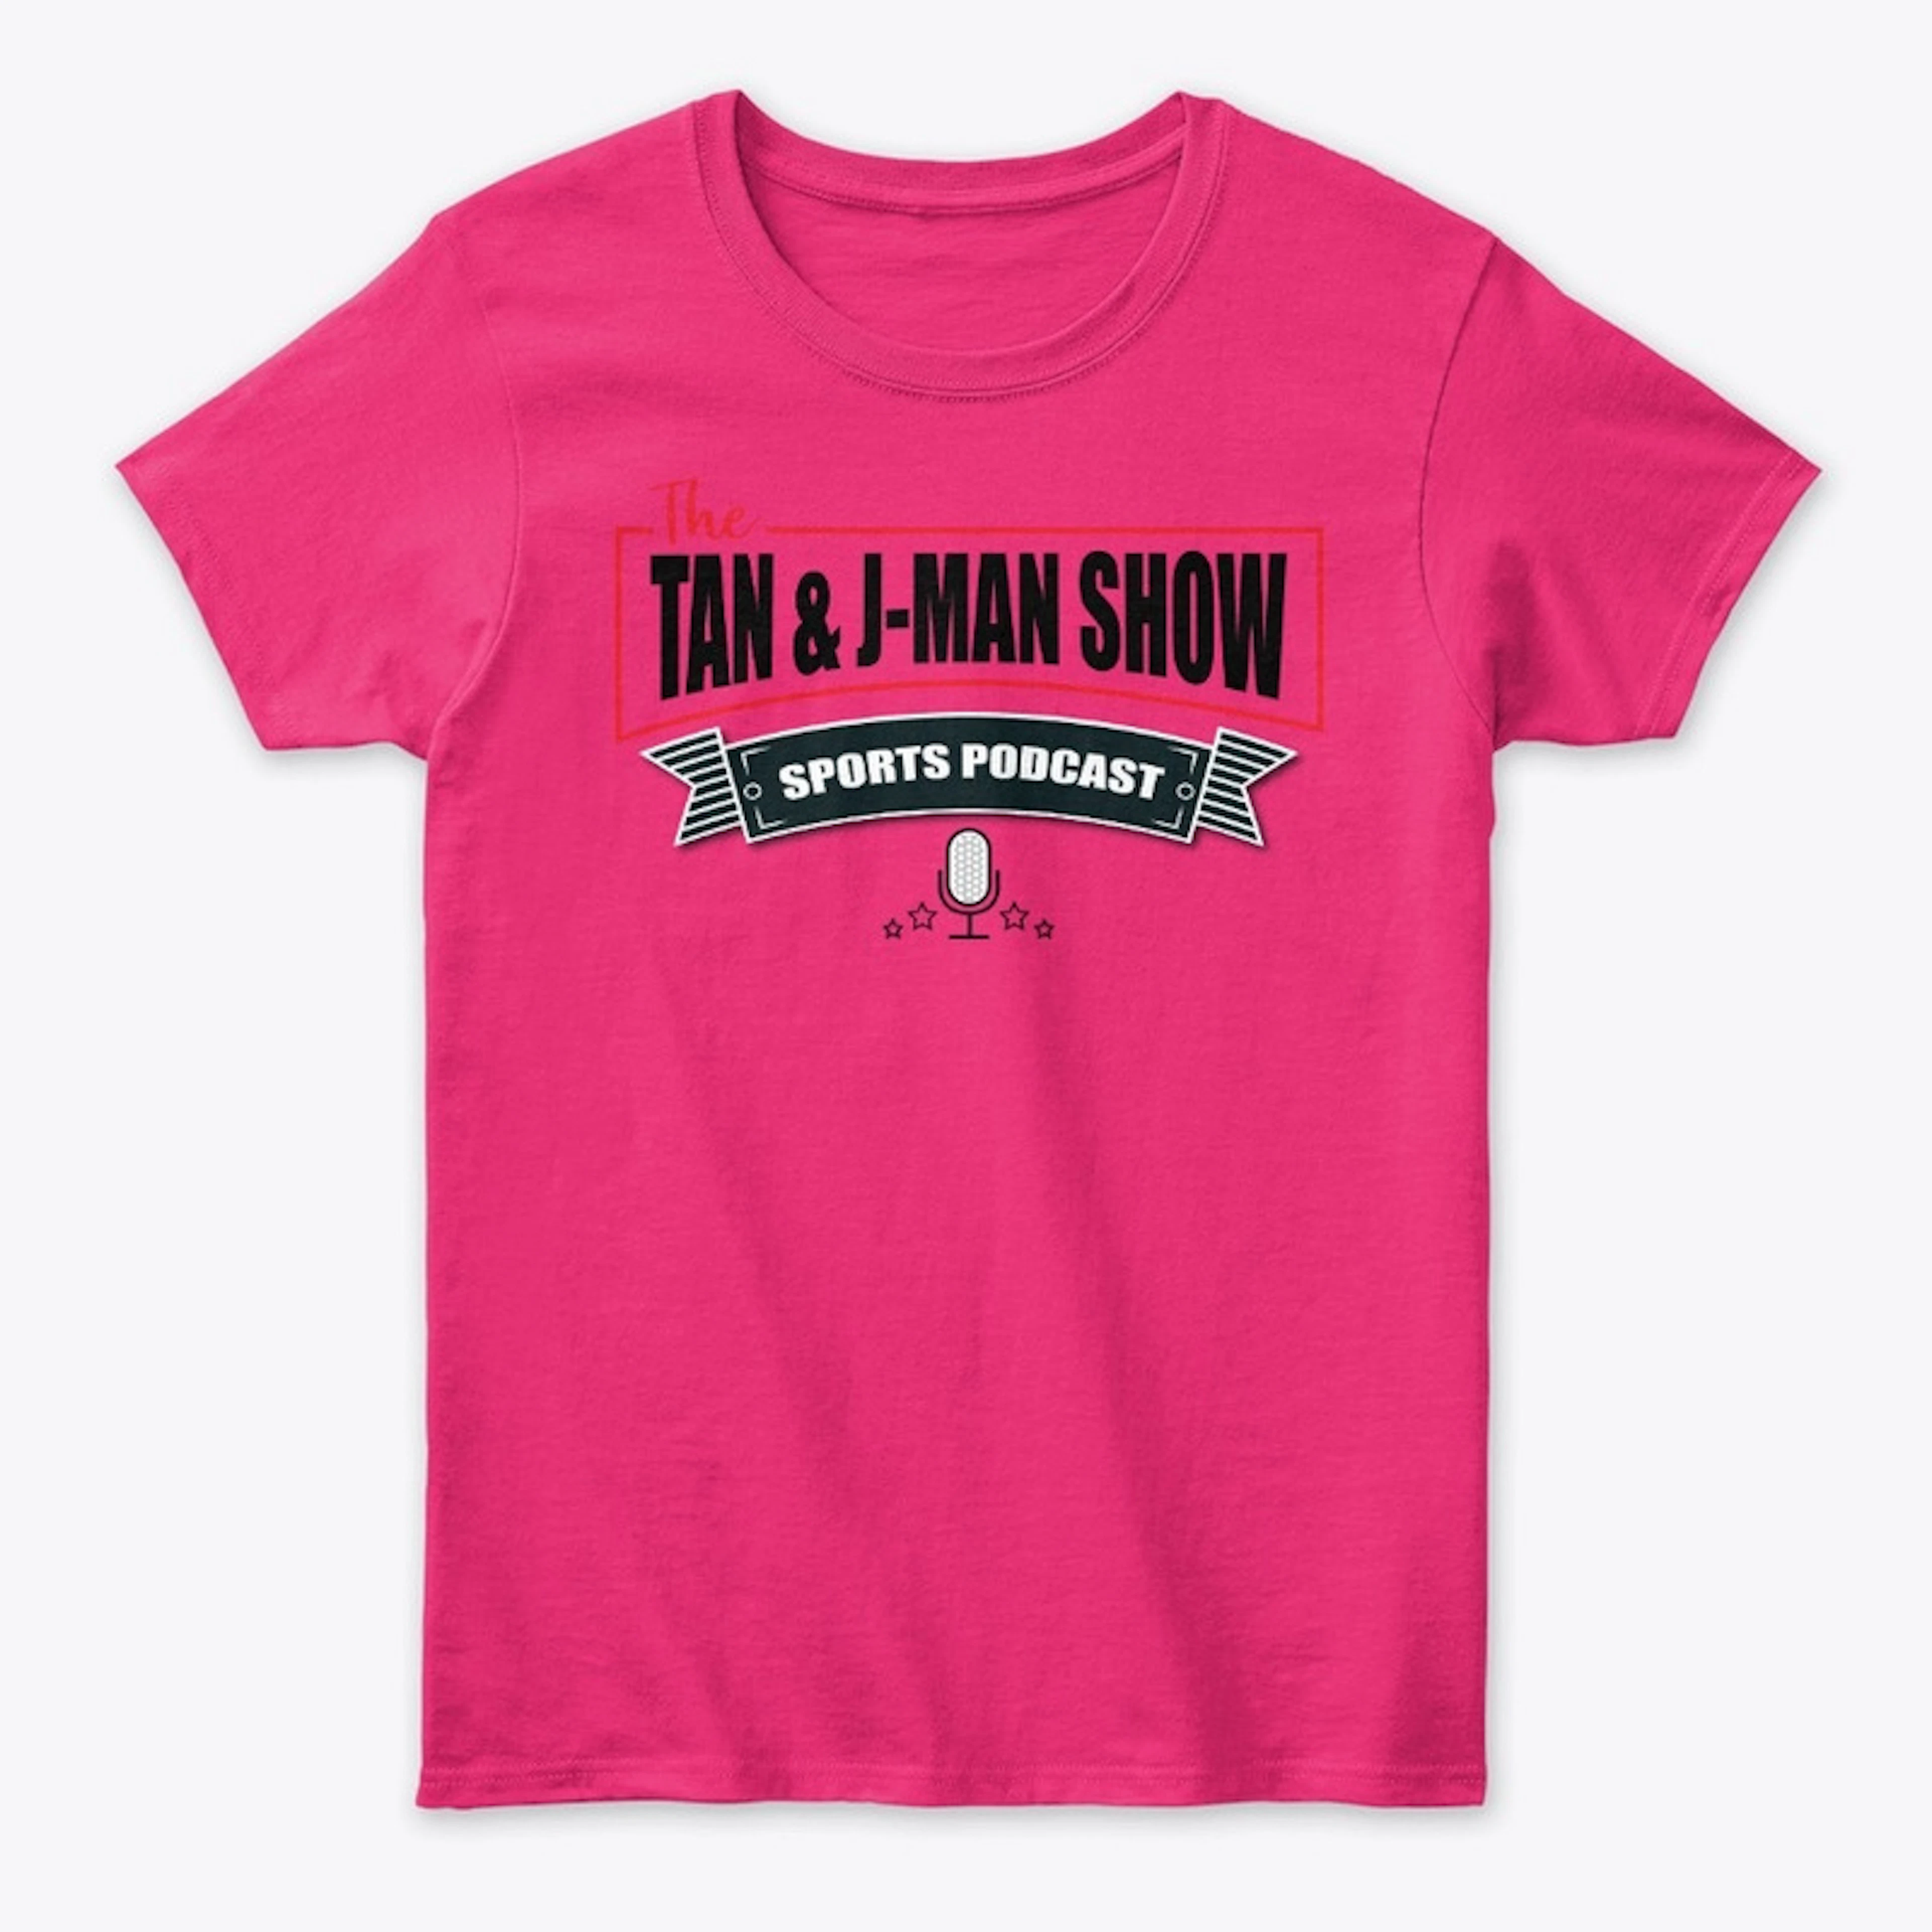 Tan and J-Man Show Women's T-Shirt